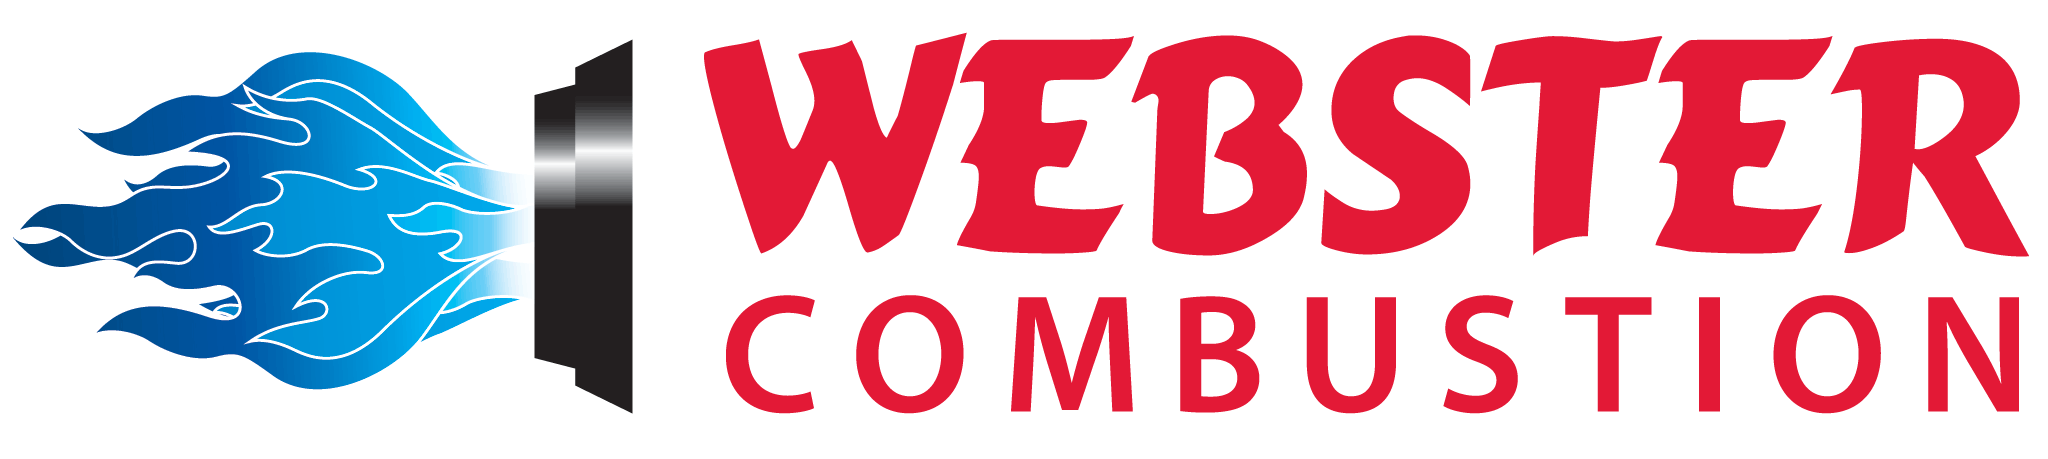 Webster-Logo.png